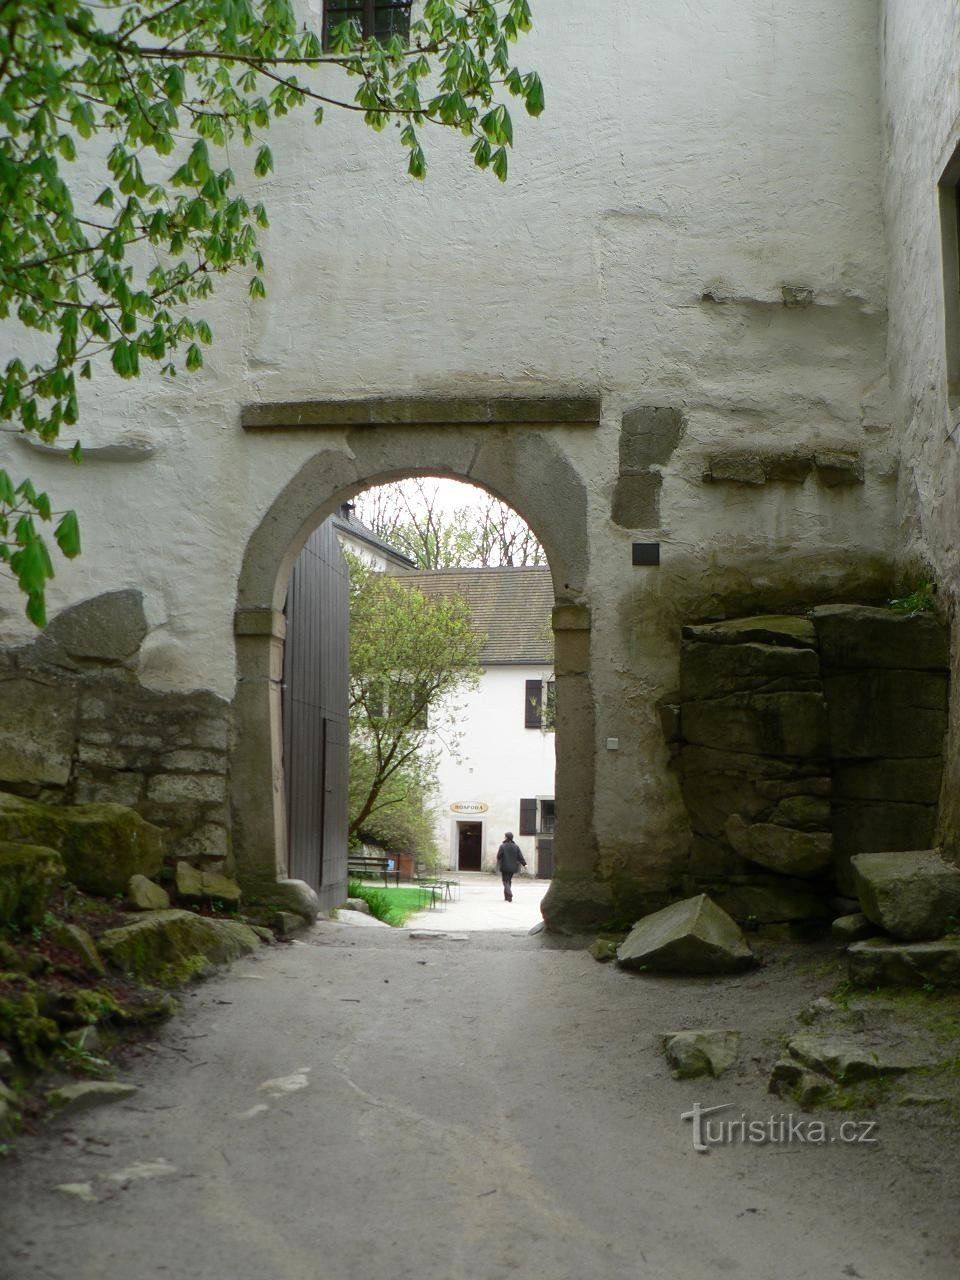 Roštejn, o portão de entrada do castelo